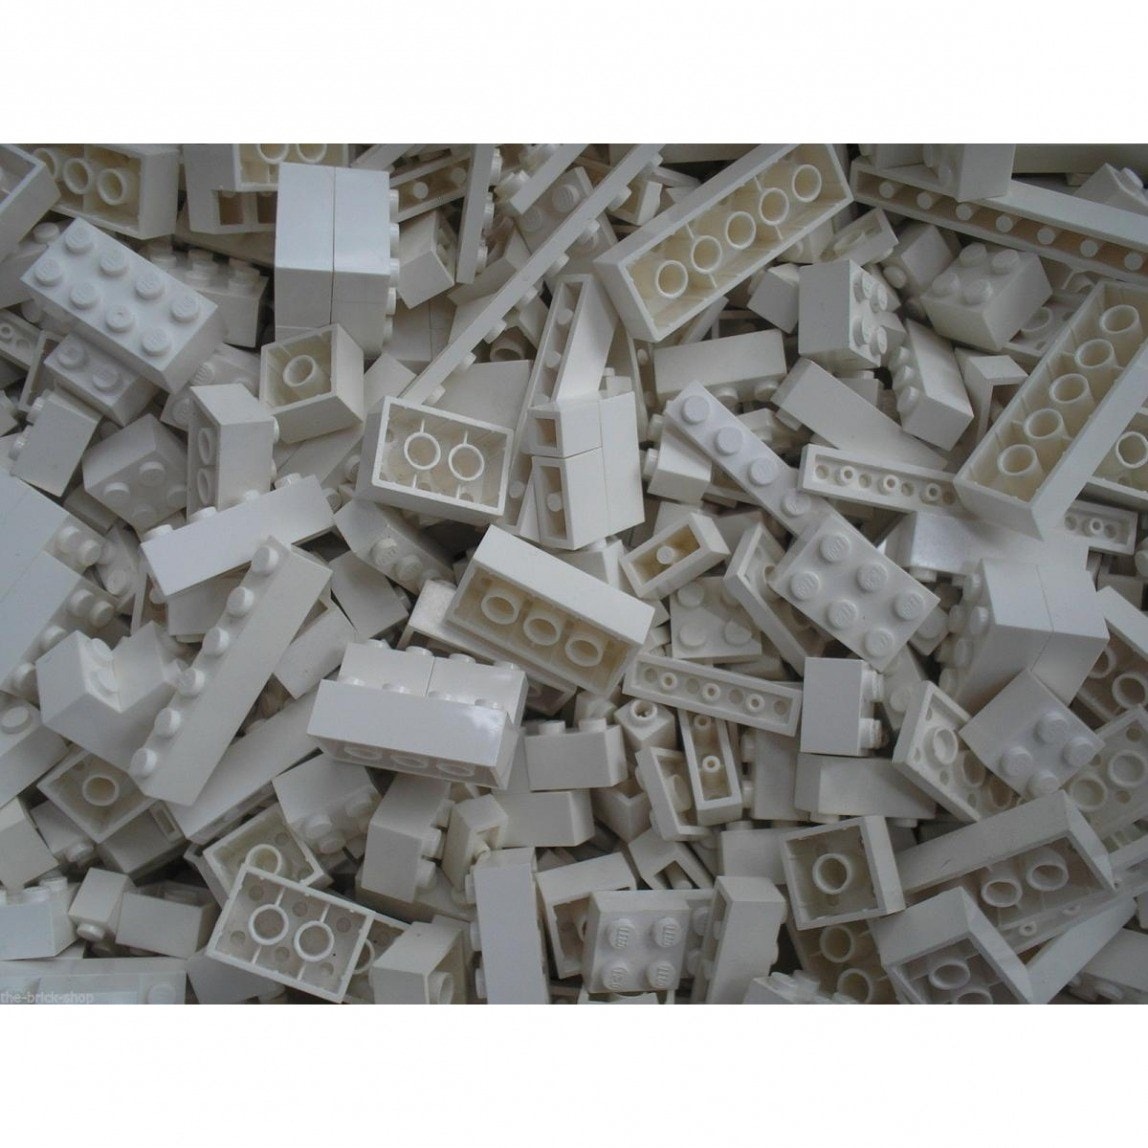 Lego Q-Bricks Briques en vrac QBricks Blanc 500grammes